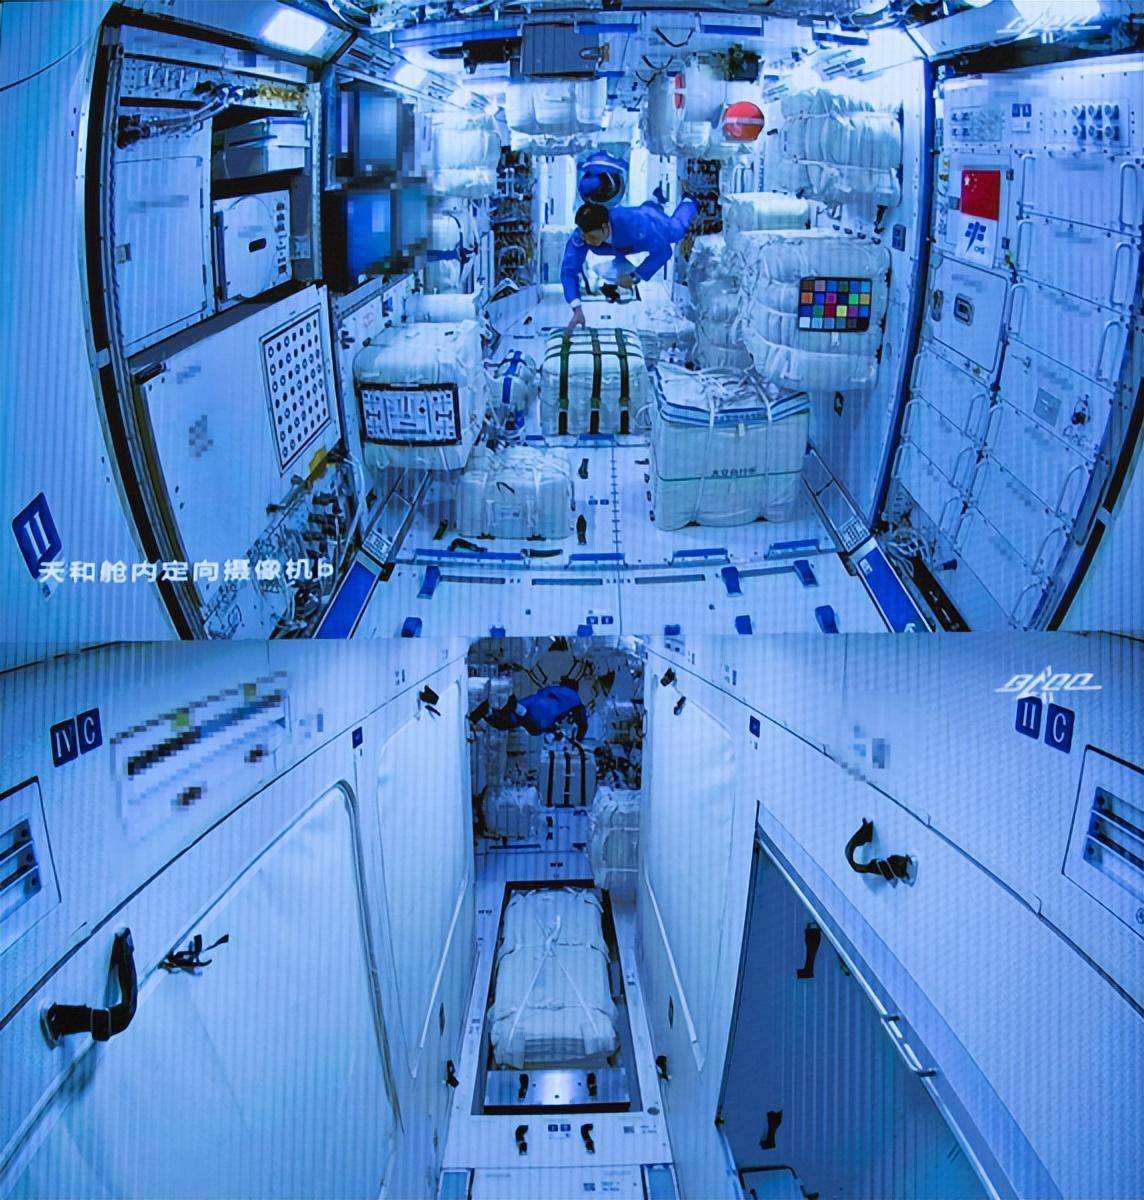 国际空间站内部虽然可以容纳13个人,但其实只有7个永久性的舱壁间,换